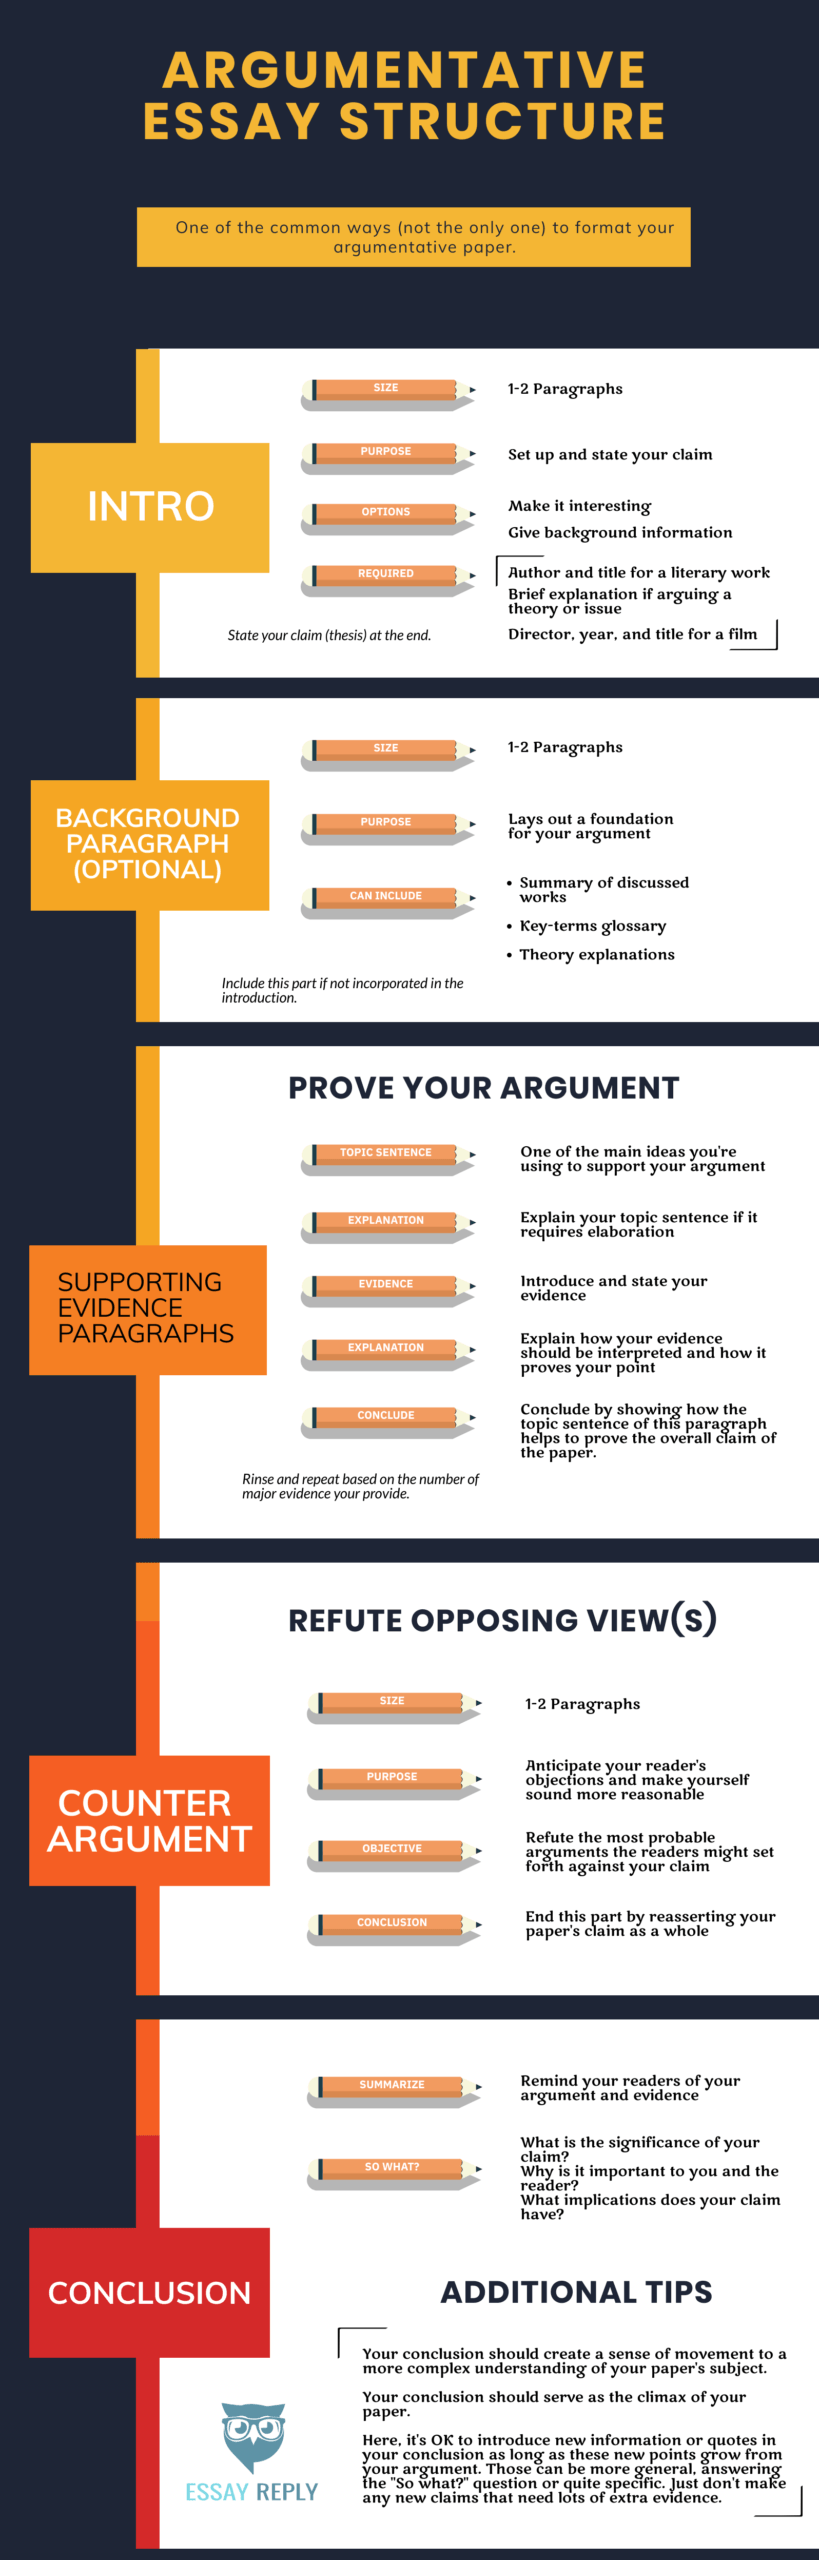 Argument persuasive essay examples